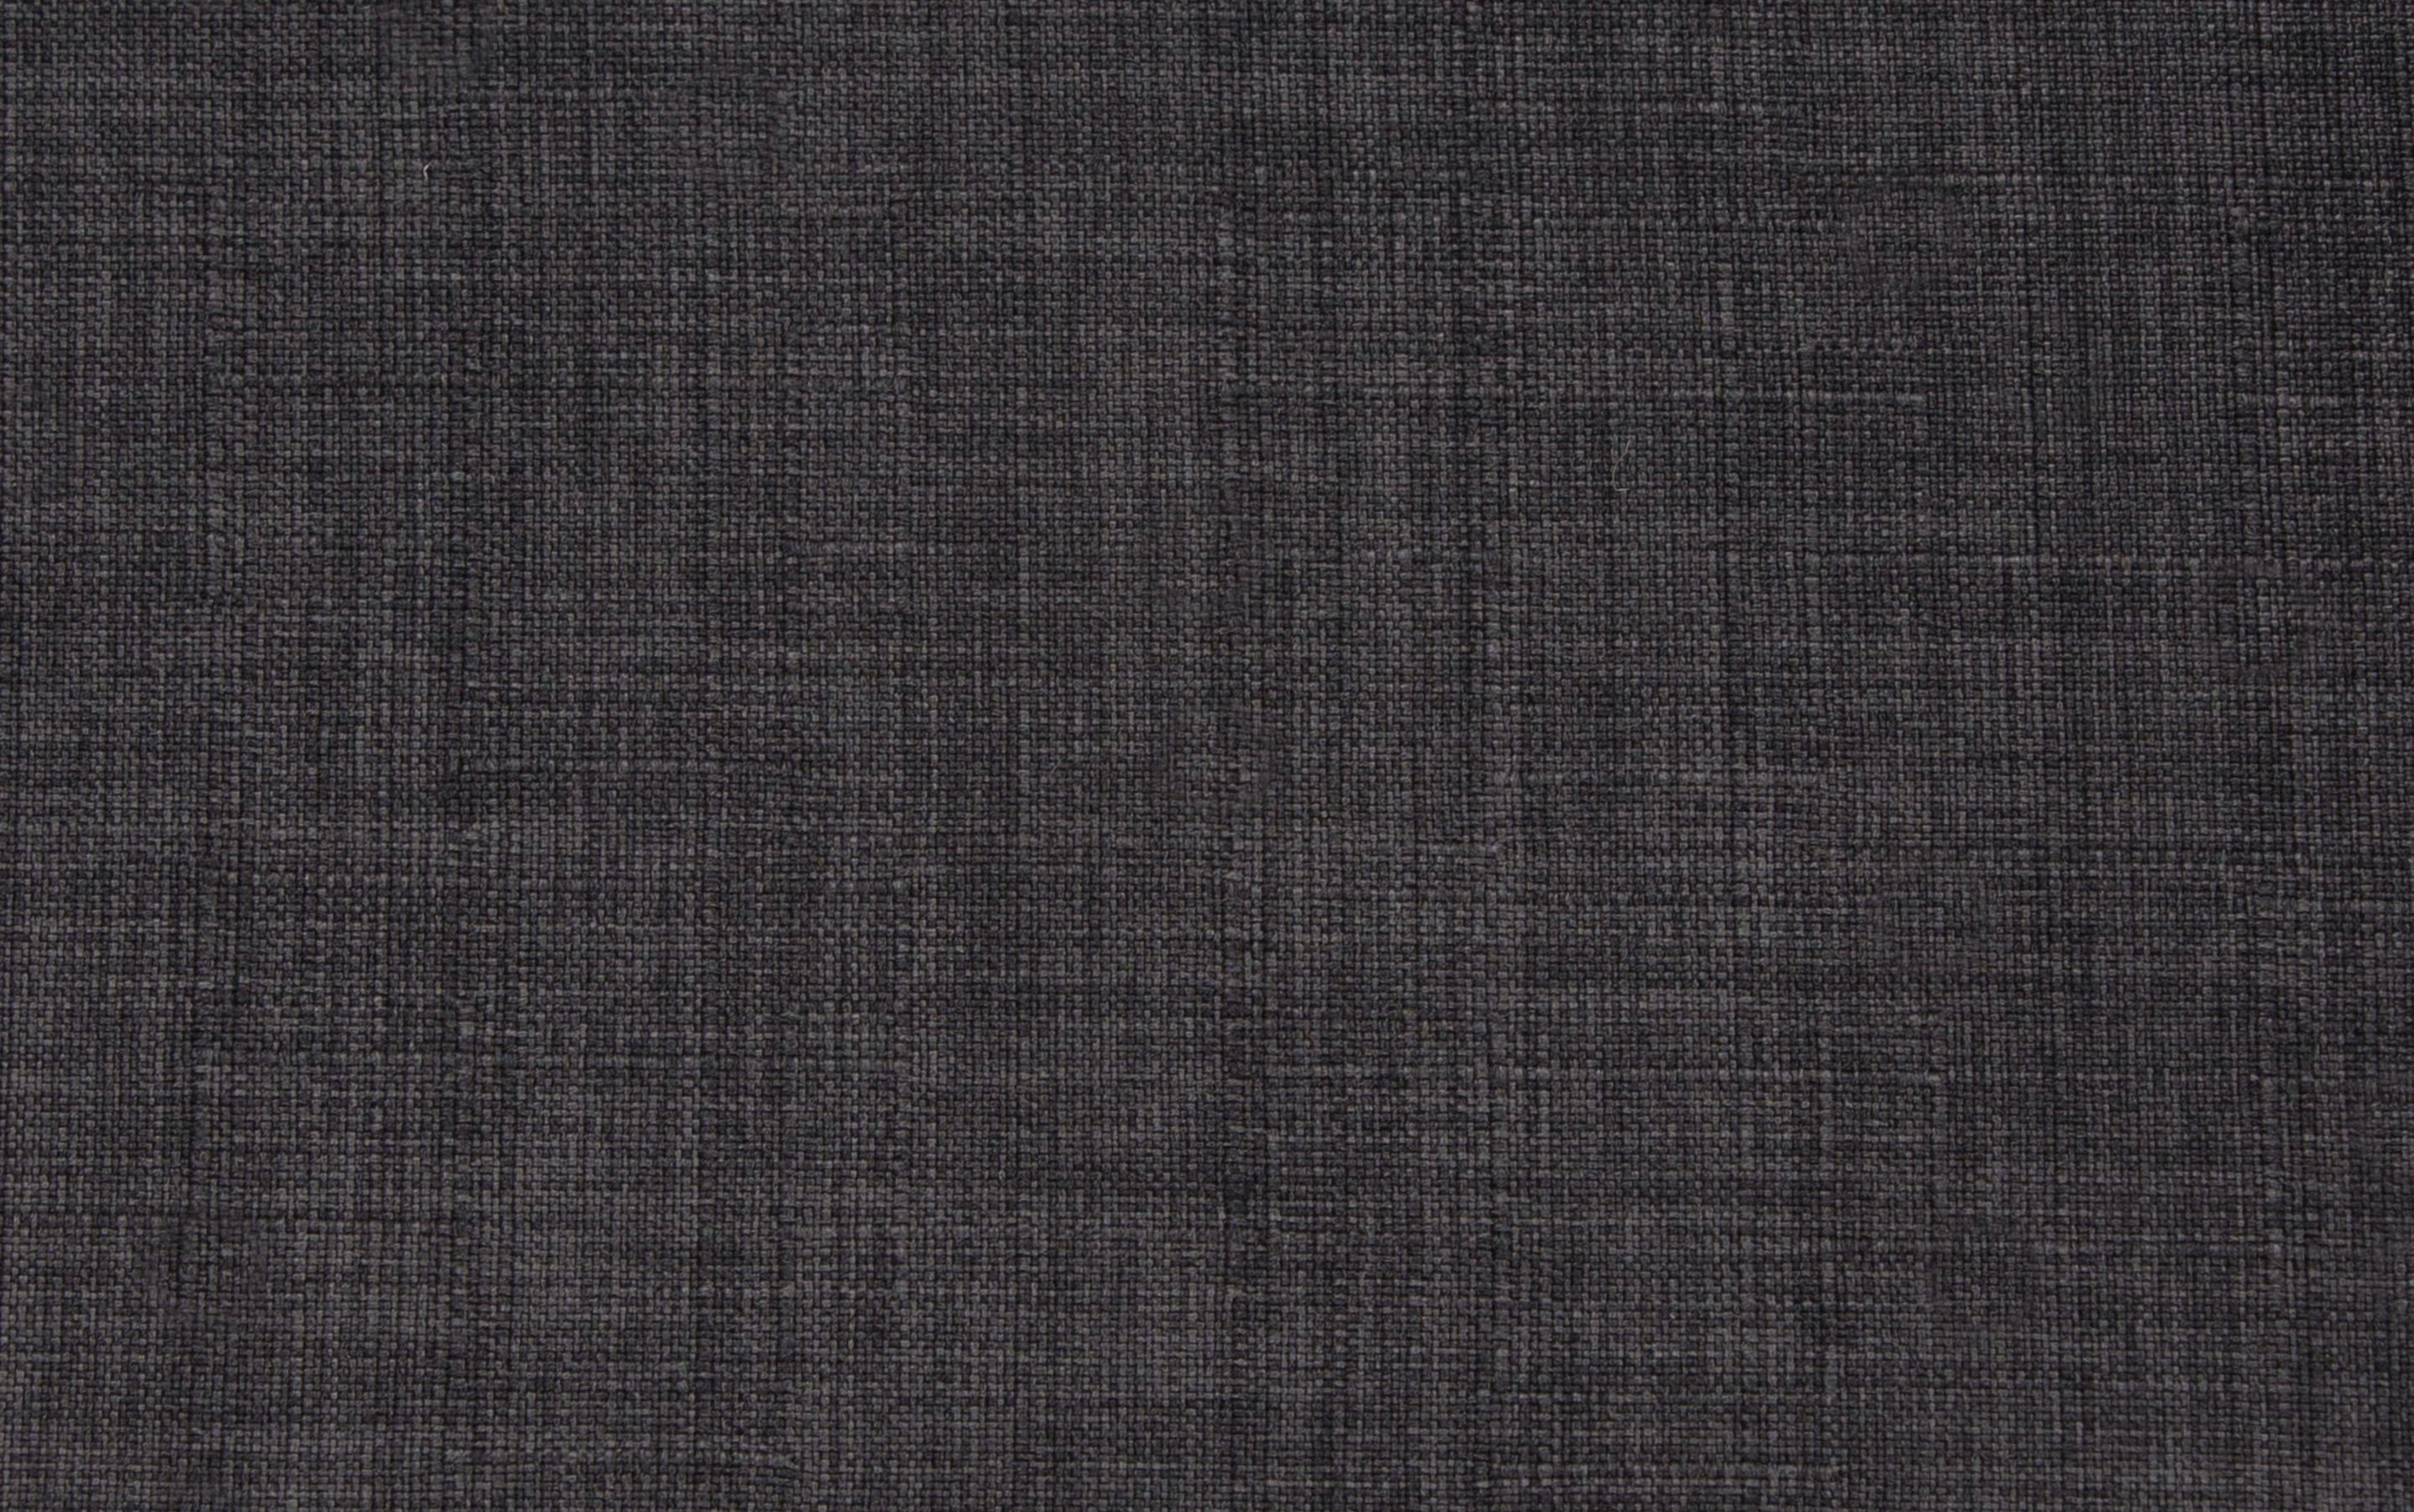 Charcoal Grey Linen Style Fabric | Sheldon Adjustable Swivel Bar Stool